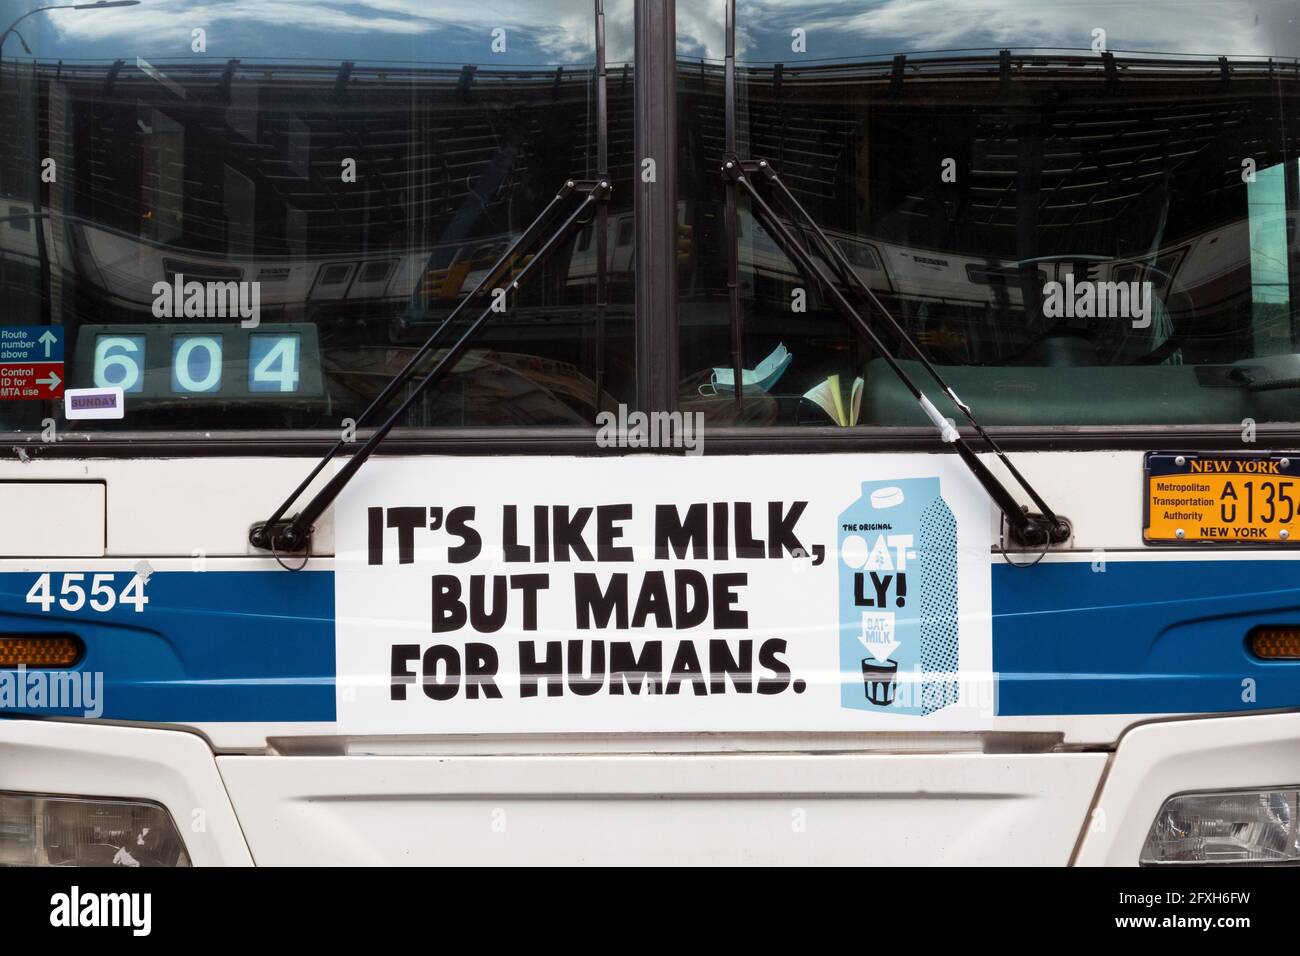 Un strano annuncio di latte d'avena di Oatly sulla parte anteriore di un autobus di New York City che dice che è come il latte, ma Mad per gli esseri umani. A Brooklyn, New York City. Foto Stock